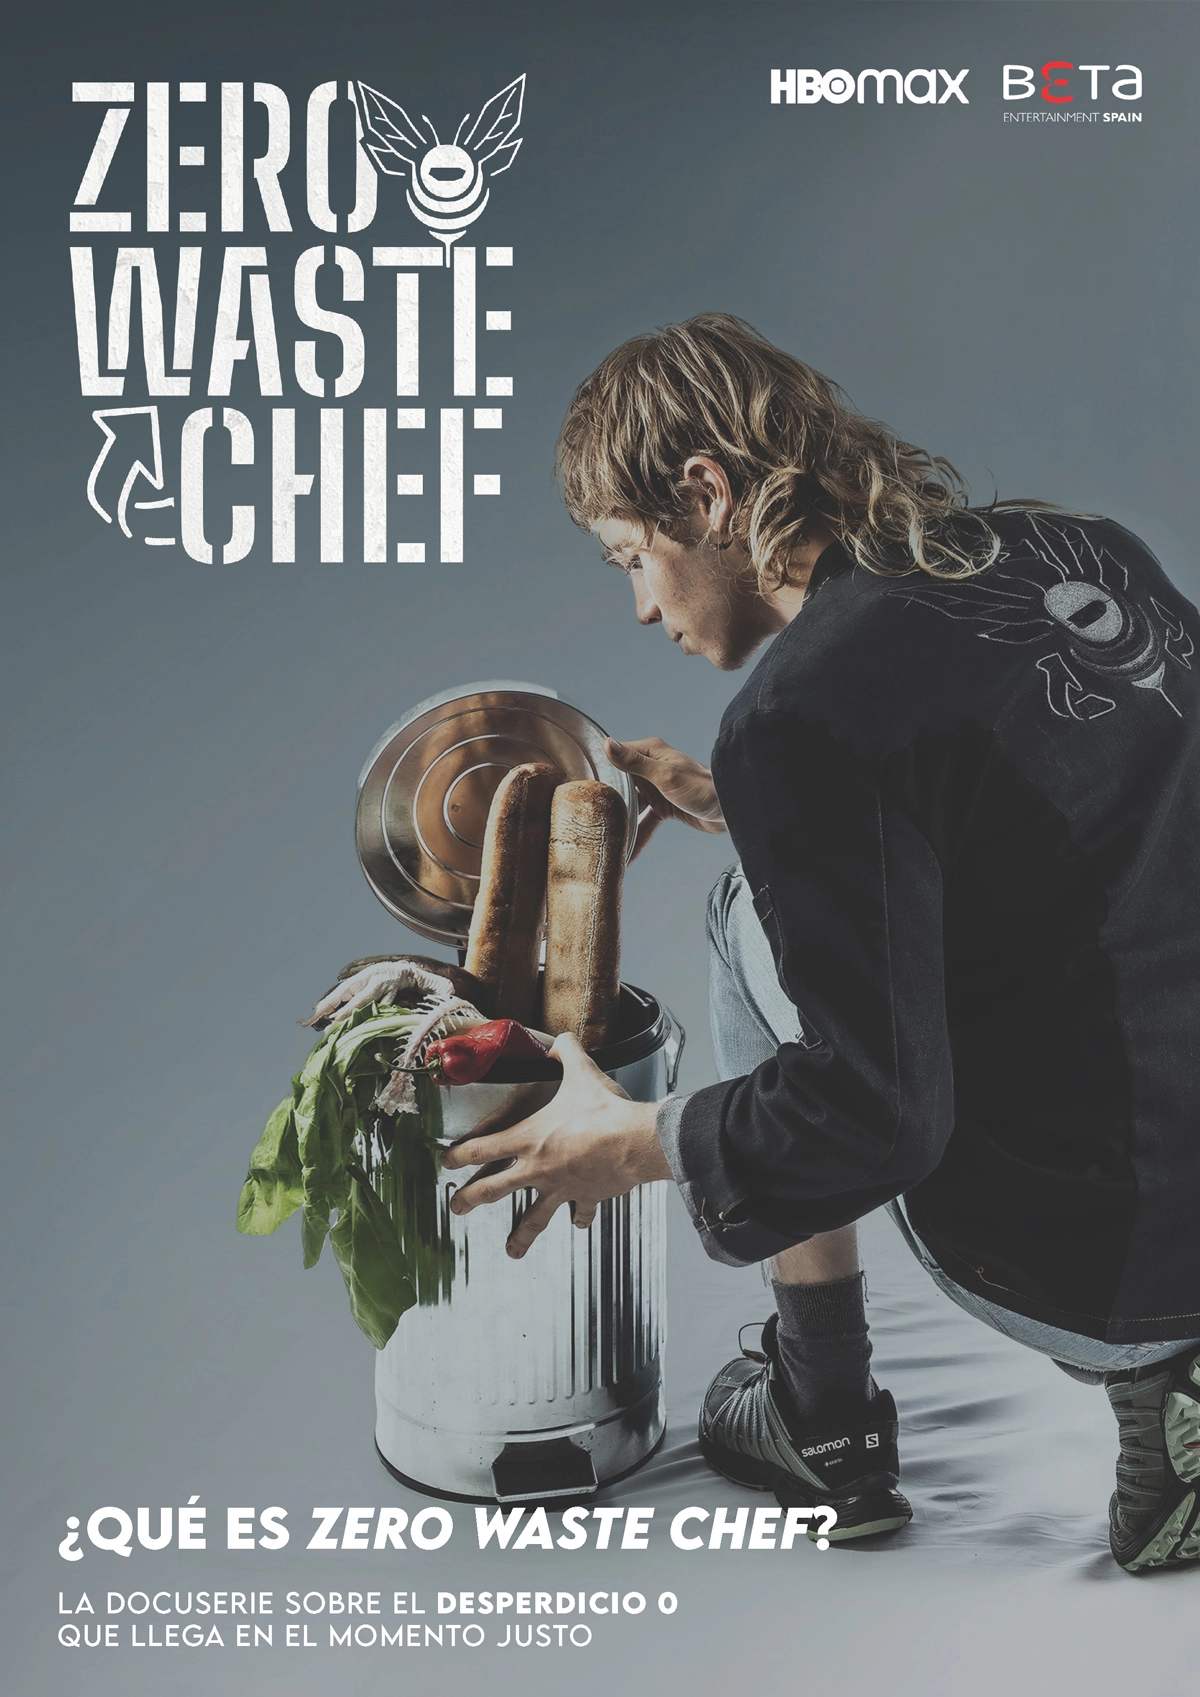 Caratula de Zero Waste Chef (Chef sin desperdicio) 